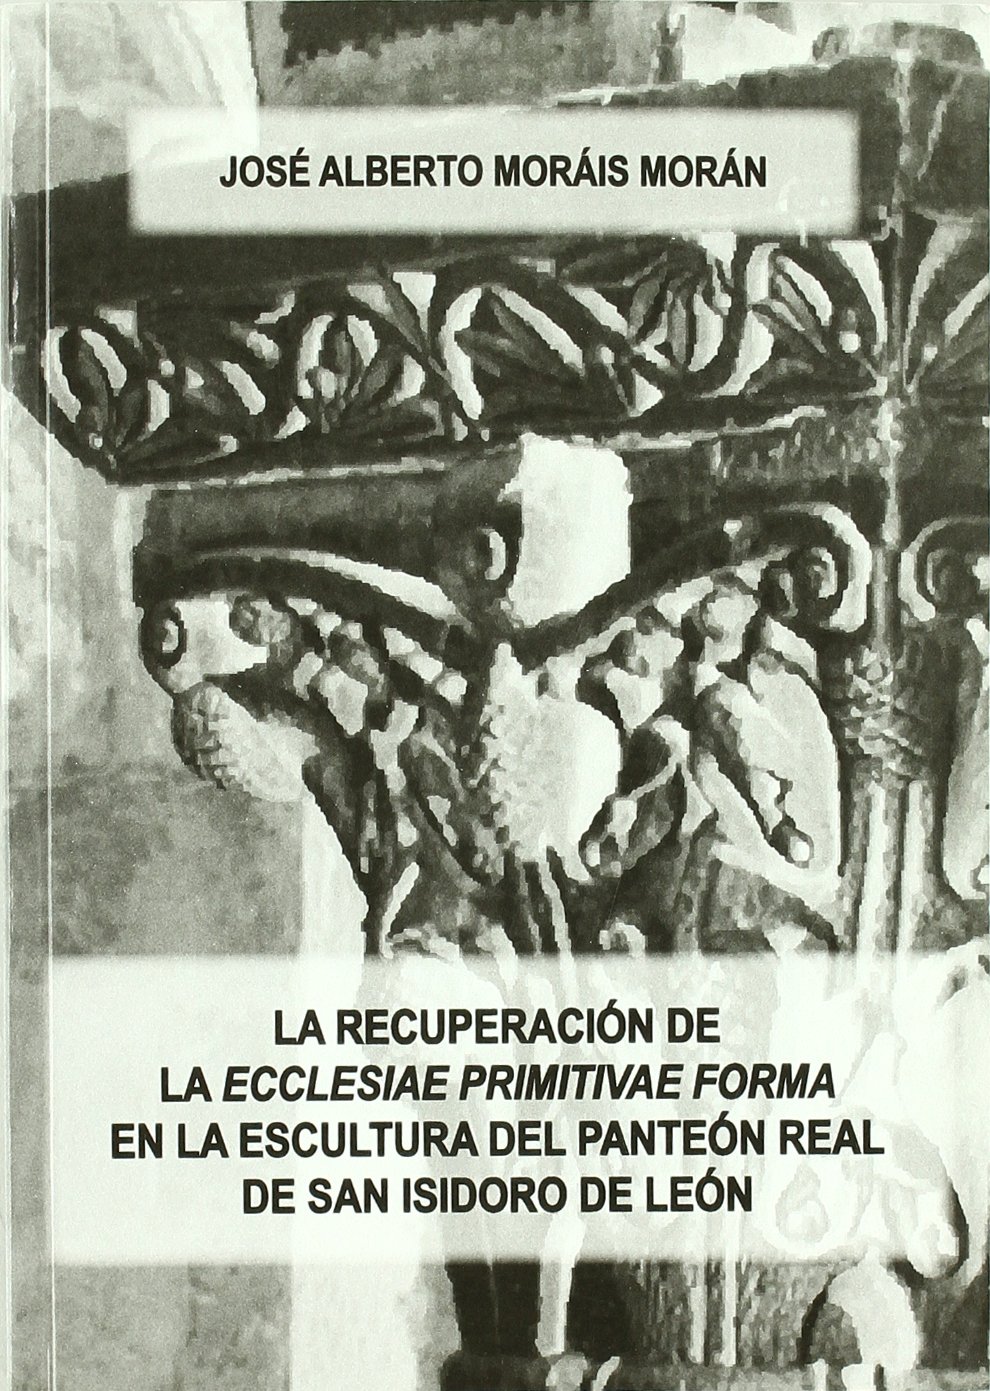 Imagen de portada del libro La recuperación de la "ecclesiae primitivae forma" en la escultura del Panteón Real de San Isidoro de León